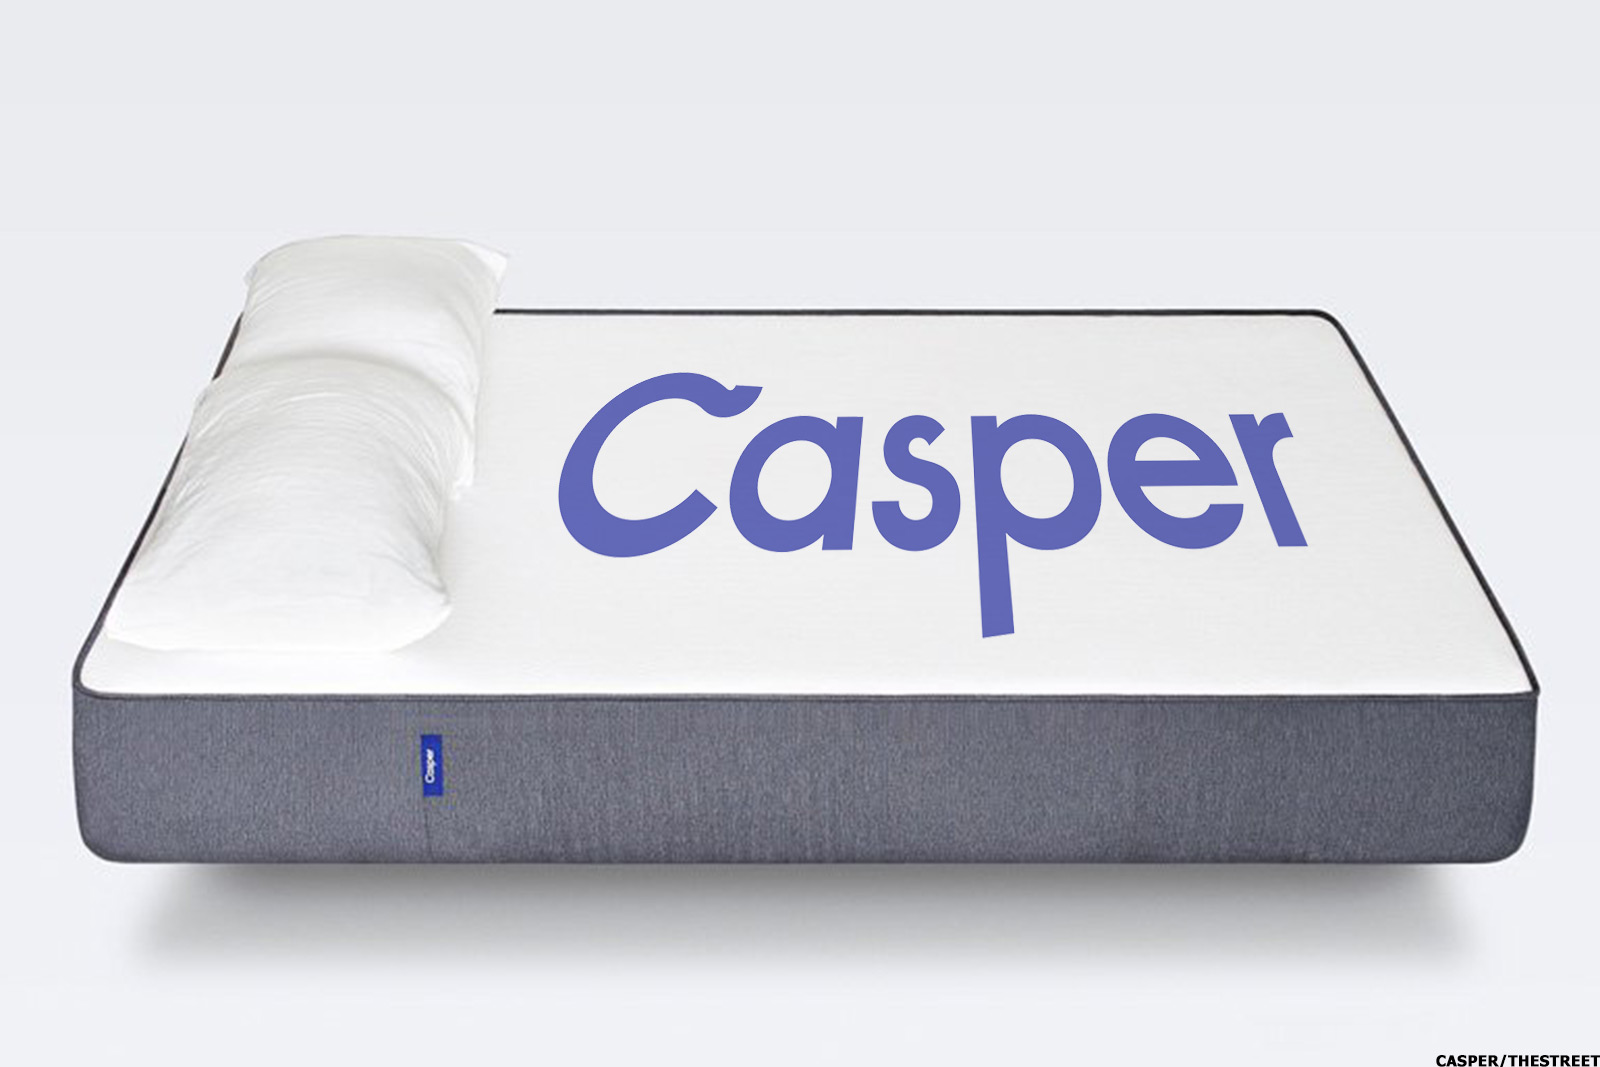 firmest casper mattress